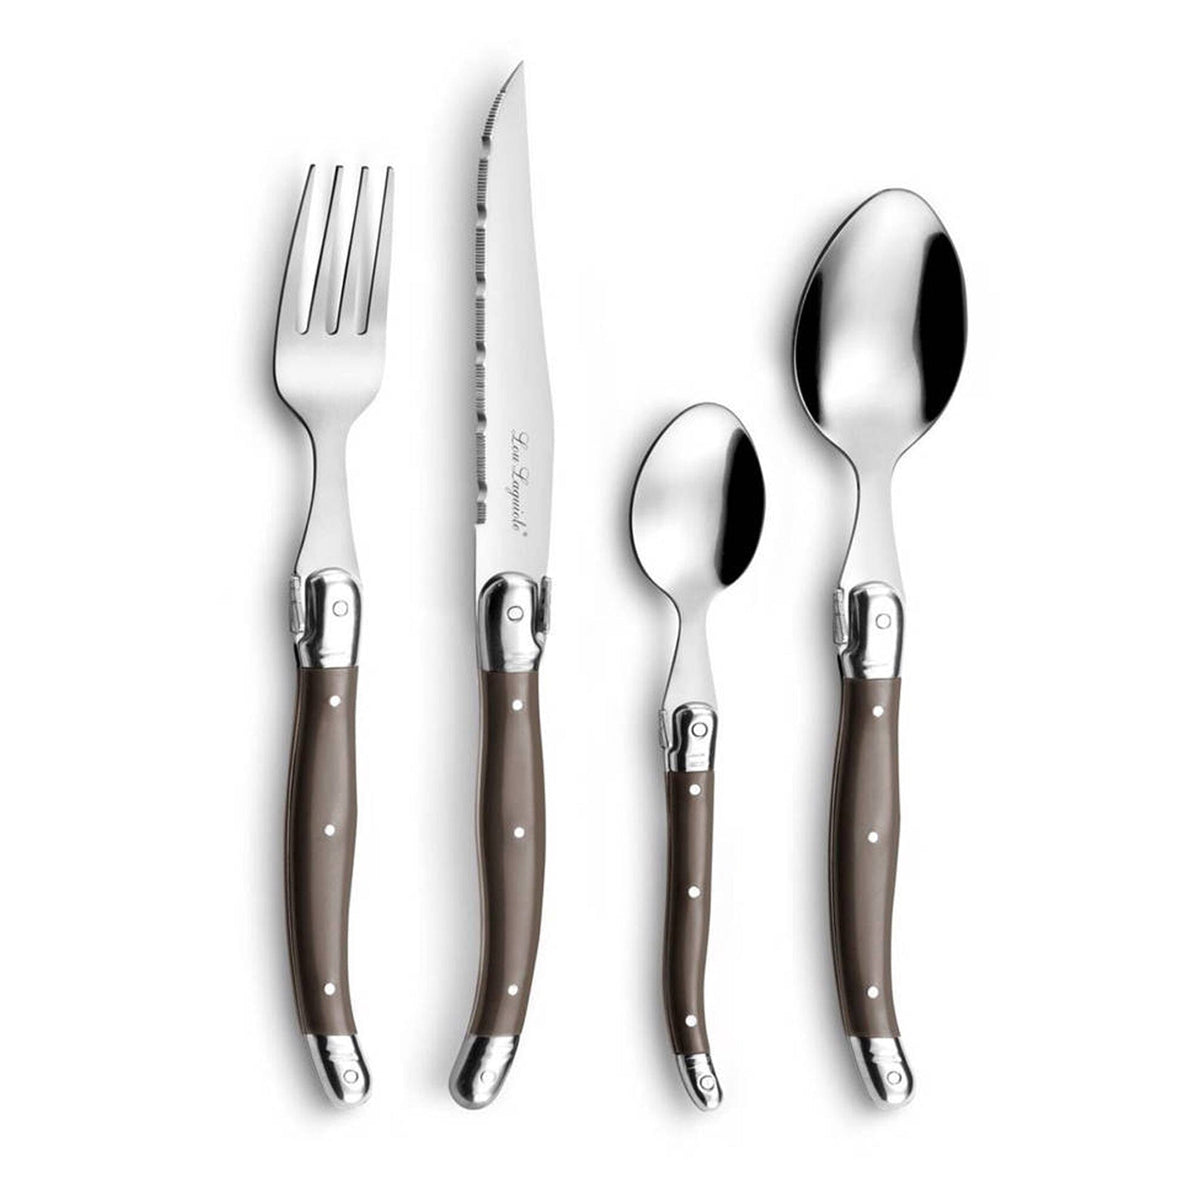 http://www.kookgigant.nl/cdn/shop/products/lou-laguiole-24-pc-cutlery-set-in-open-window-box-pepper-bestekset-lou-laguiole-995734_1200x1200.jpg?v=1683905726